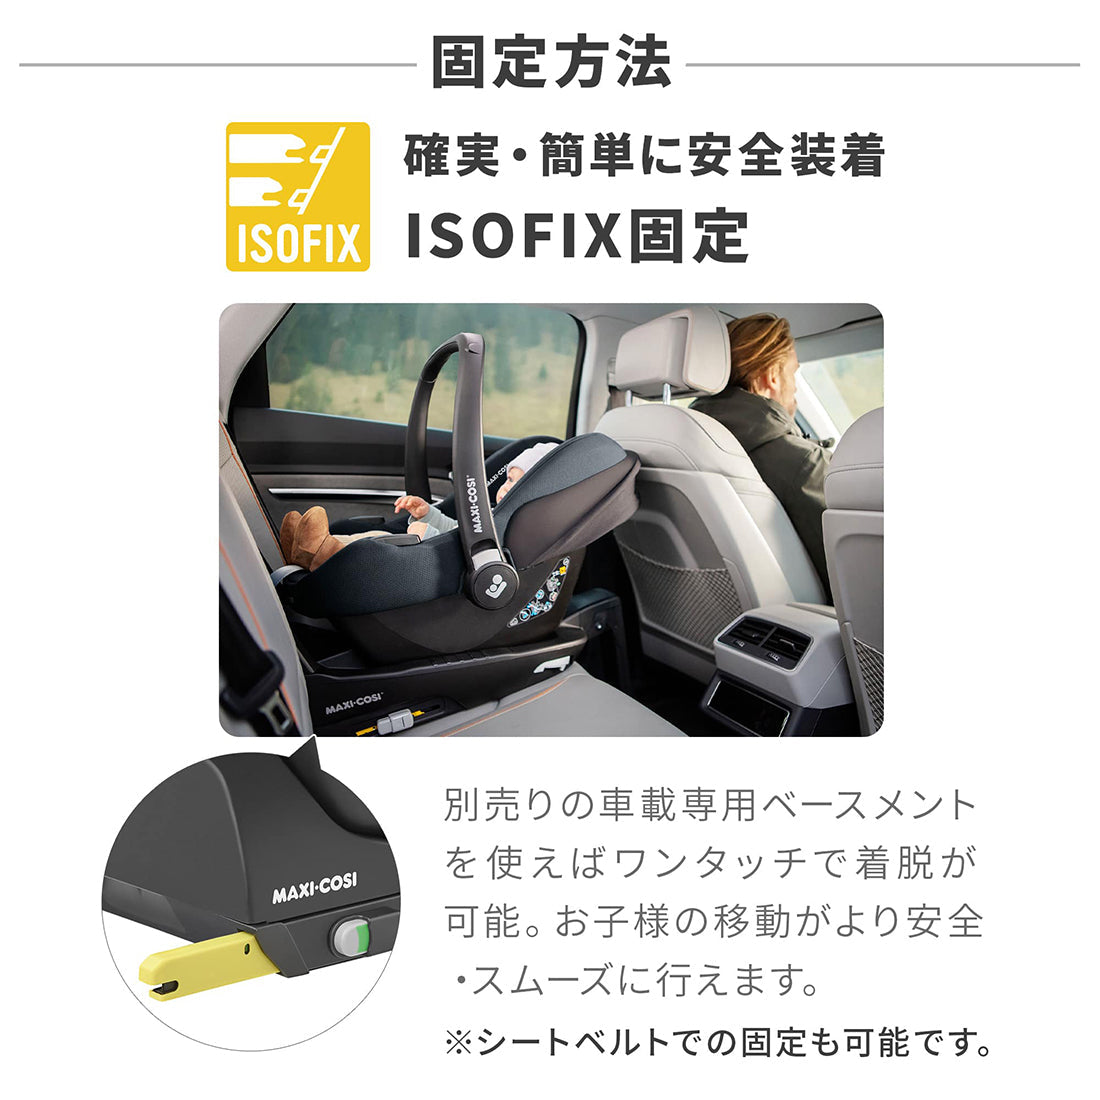 【固定方法-確実・簡単に安全装着 ISOFIX固定】別売りの車載専用ベースメントを使えばワンタッチで着脱が可能。お子様の移動がより安全・スムーズに行えます。※シートベルトでの固定も可能です。